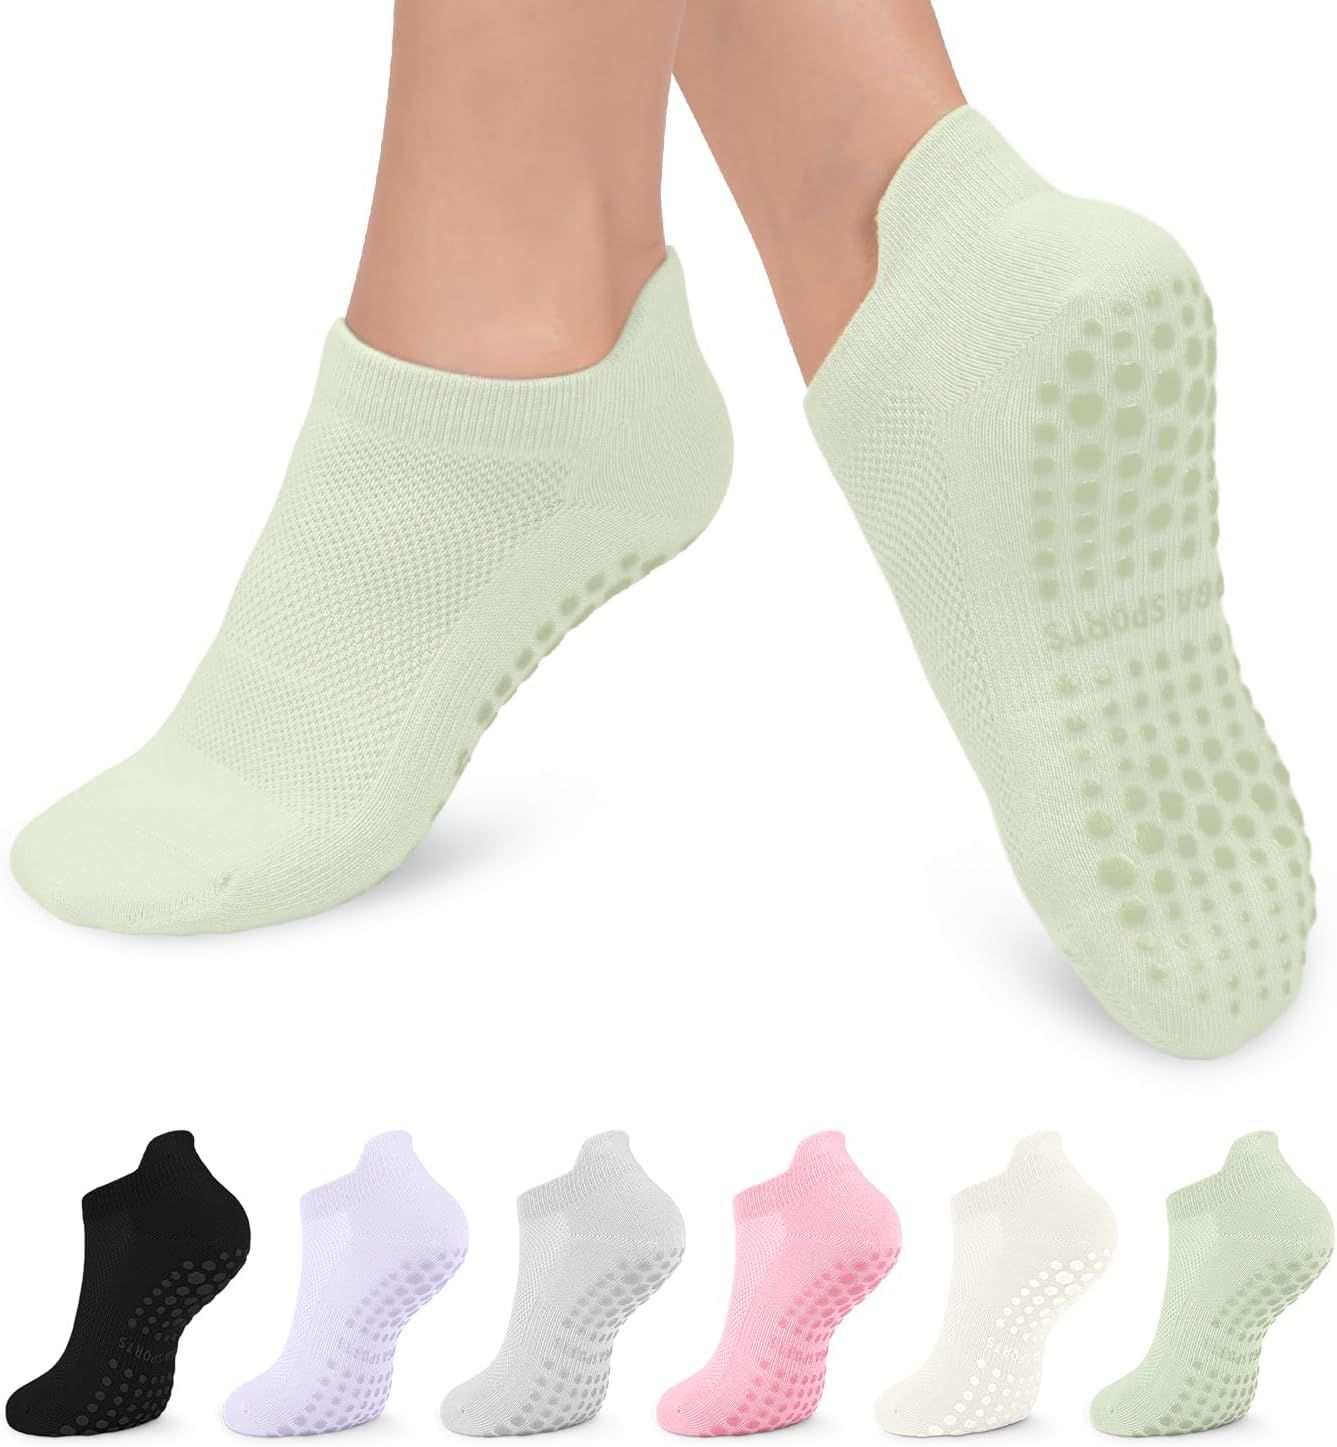 6 Pairs Pilates Grip Socks for Women, Non-slip Yoga Athletic Socks for Barre Ballet Barefoot Work... | Amazon (US)